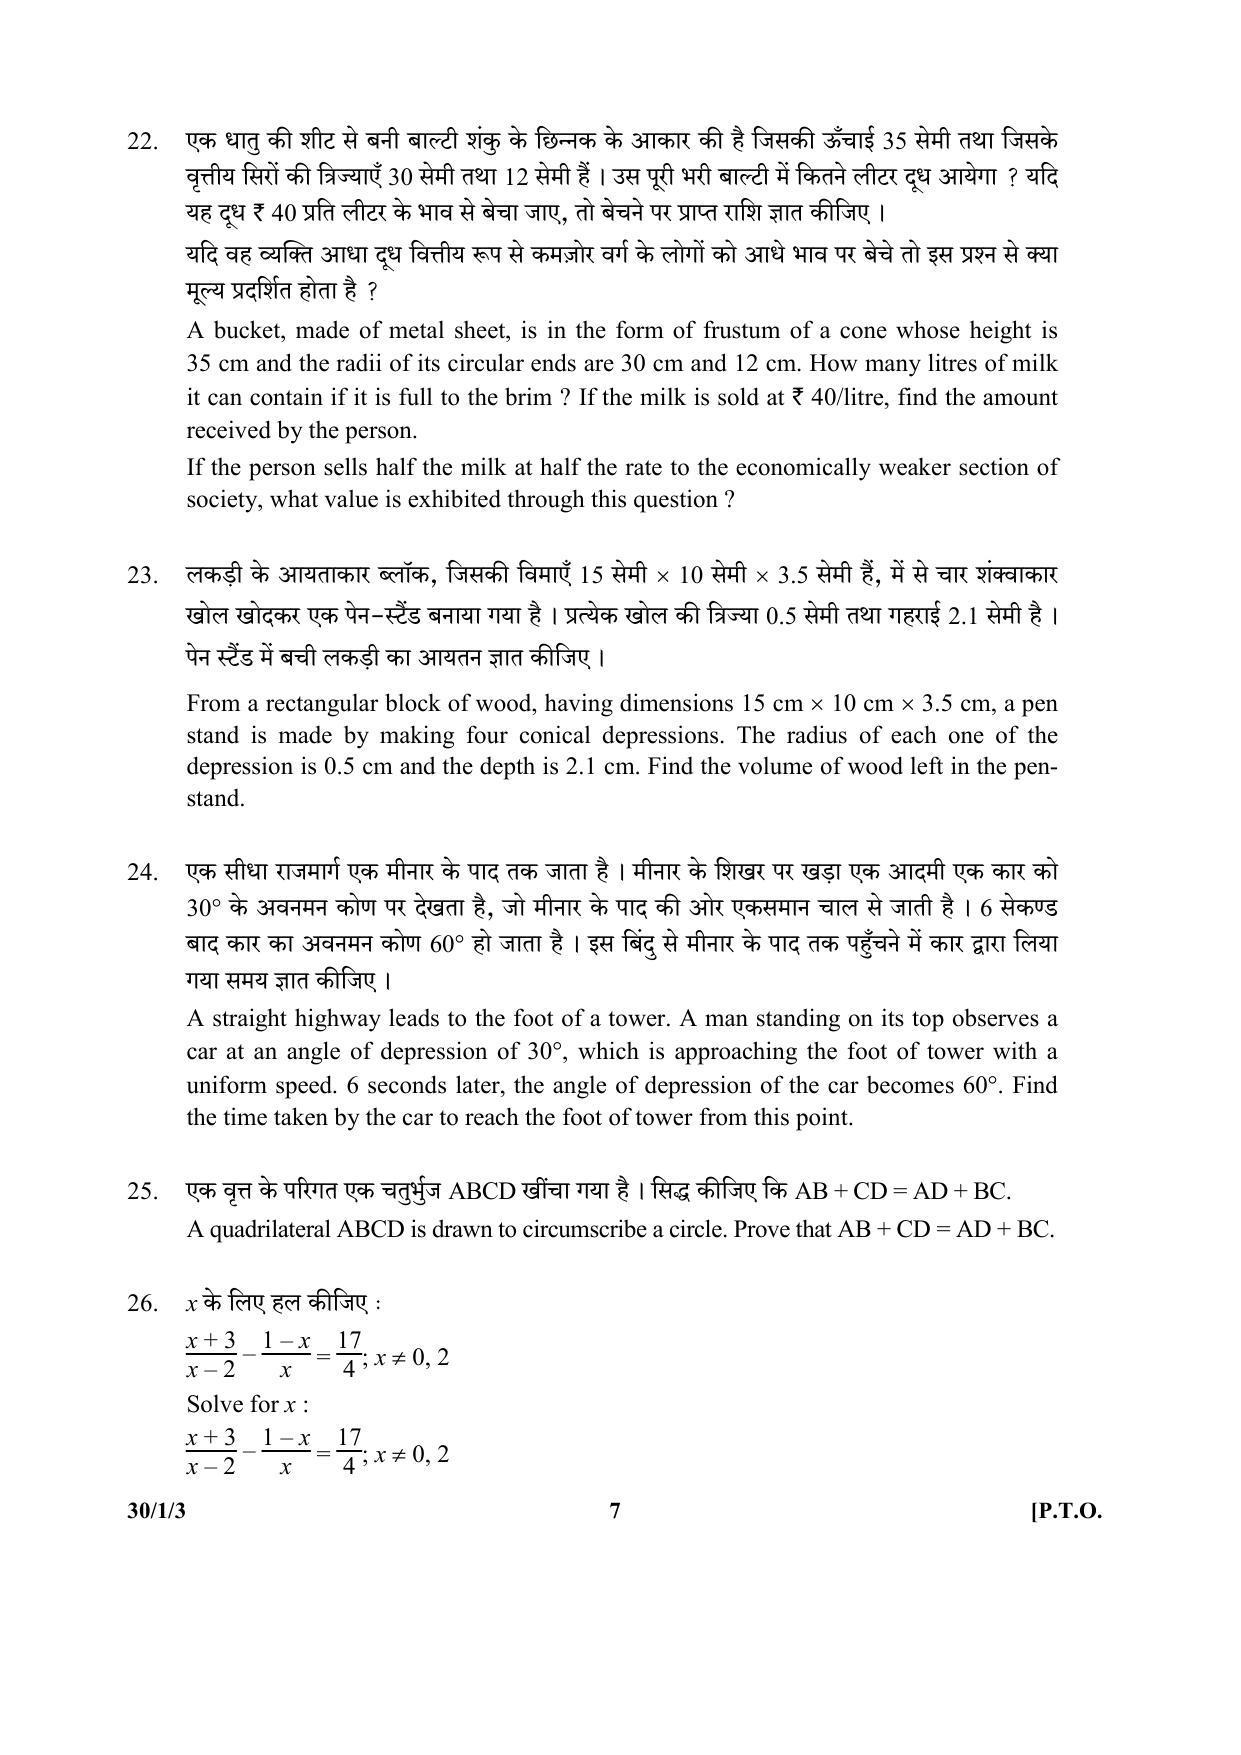 CBSE Class 10 30-1-3 (Mathematics) 2017-comptt Question Paper - Page 7